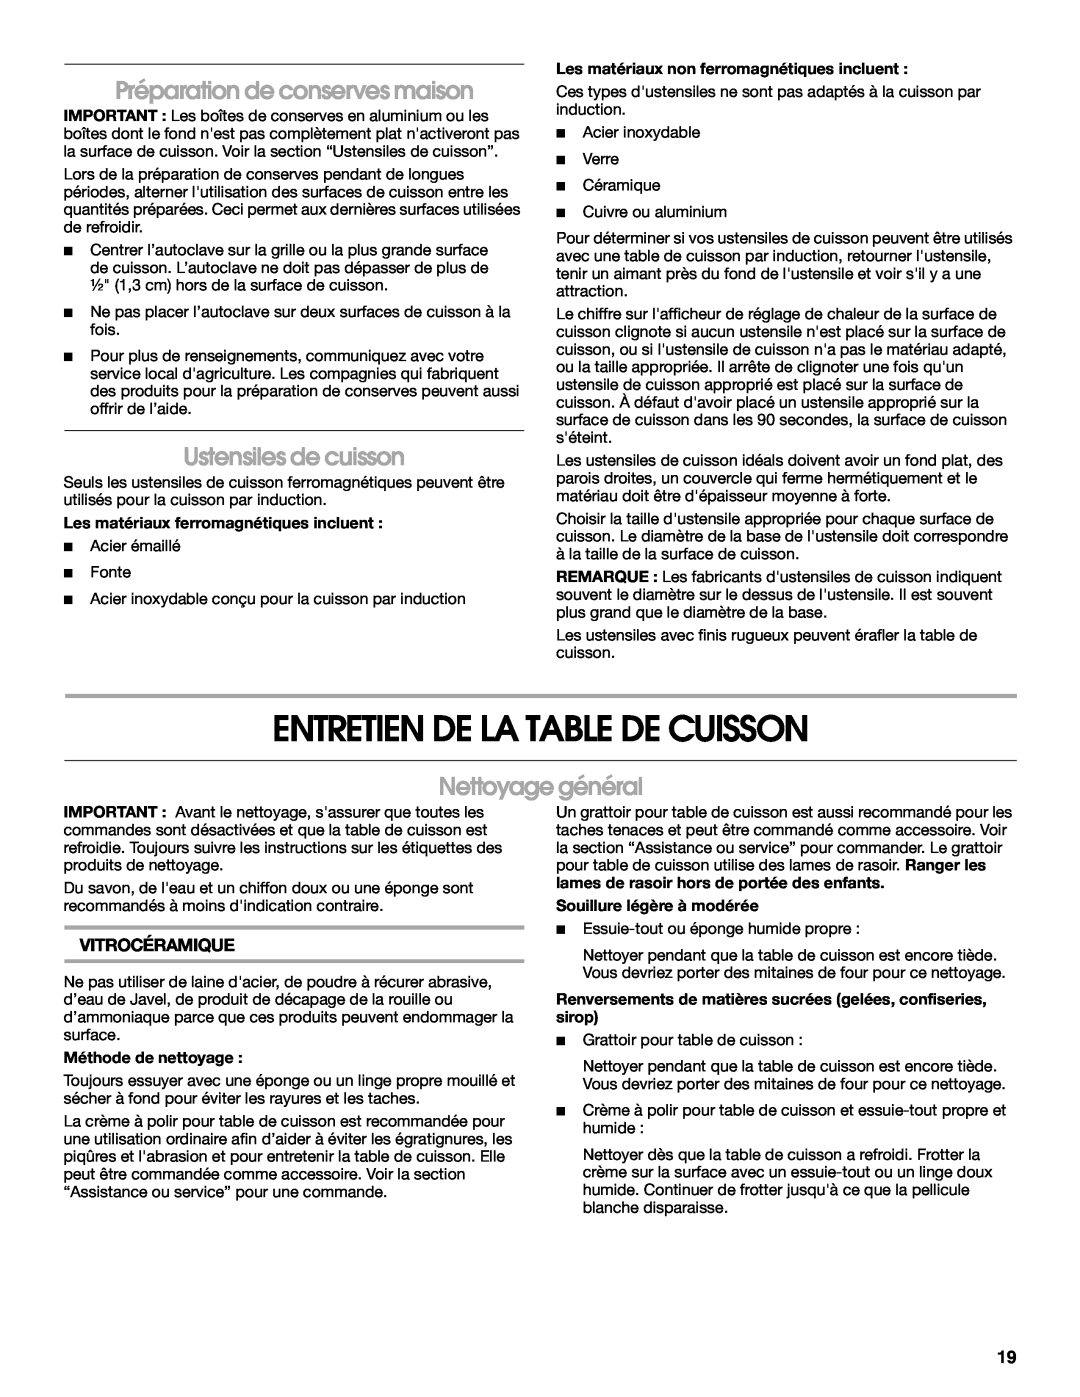 Jenn-Air W10141605 manual Entretien De La Table De Cuisson, Préparation de conserves maison, Ustensiles de cuisson 